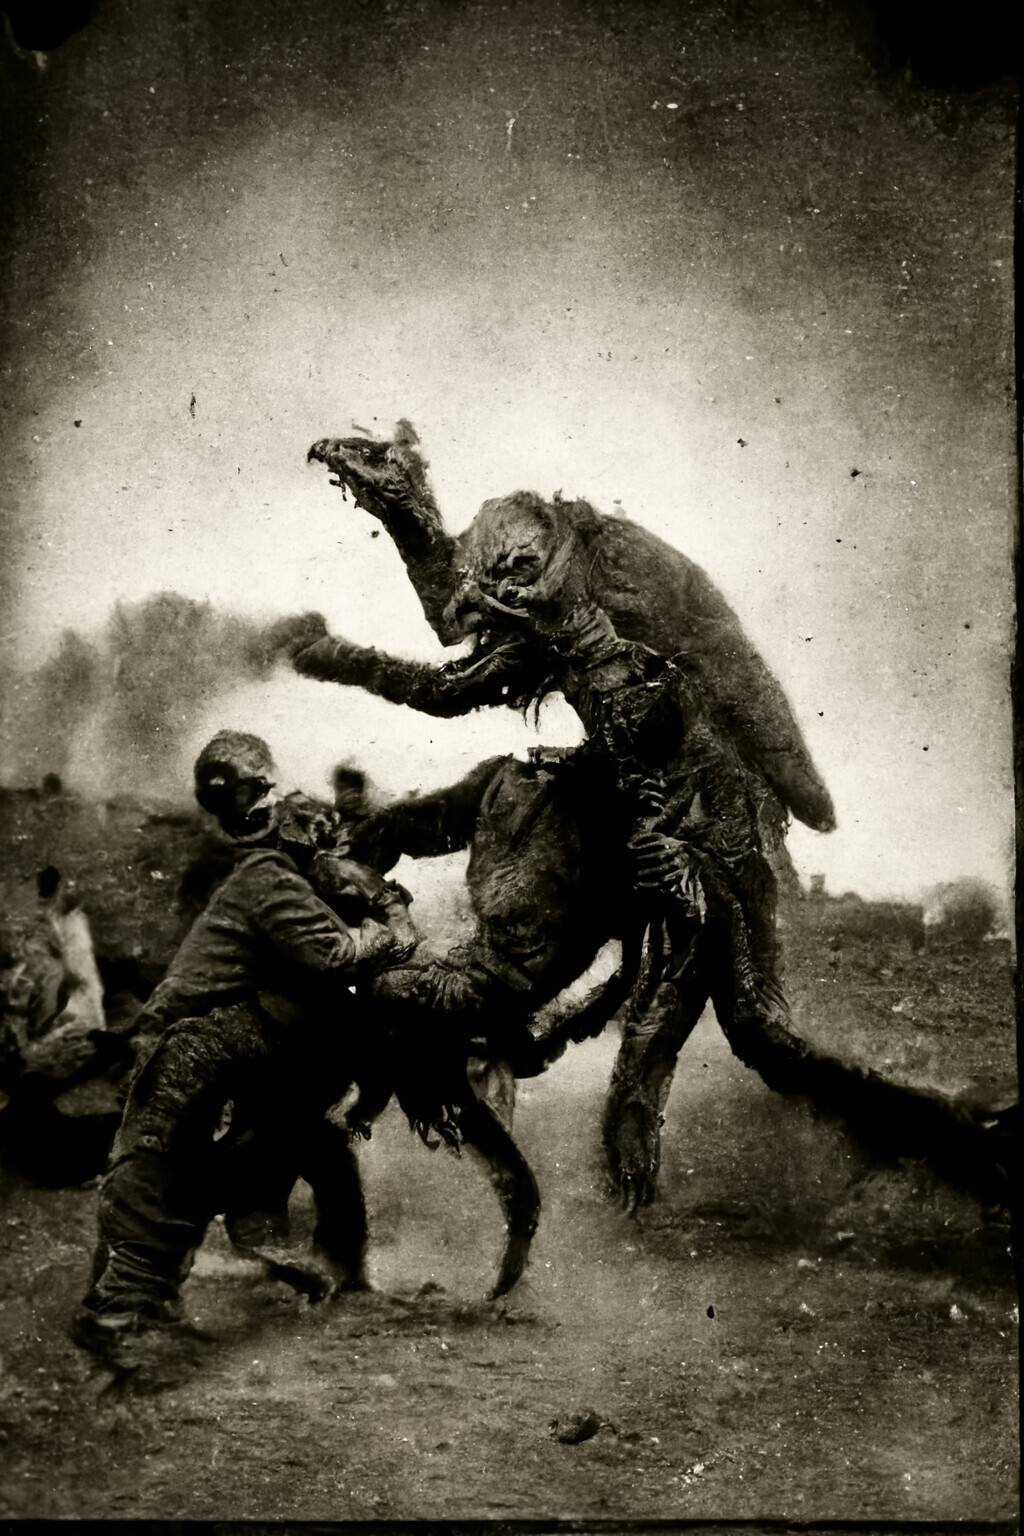 A Stubborn Jedec
c. 1888
Photograph